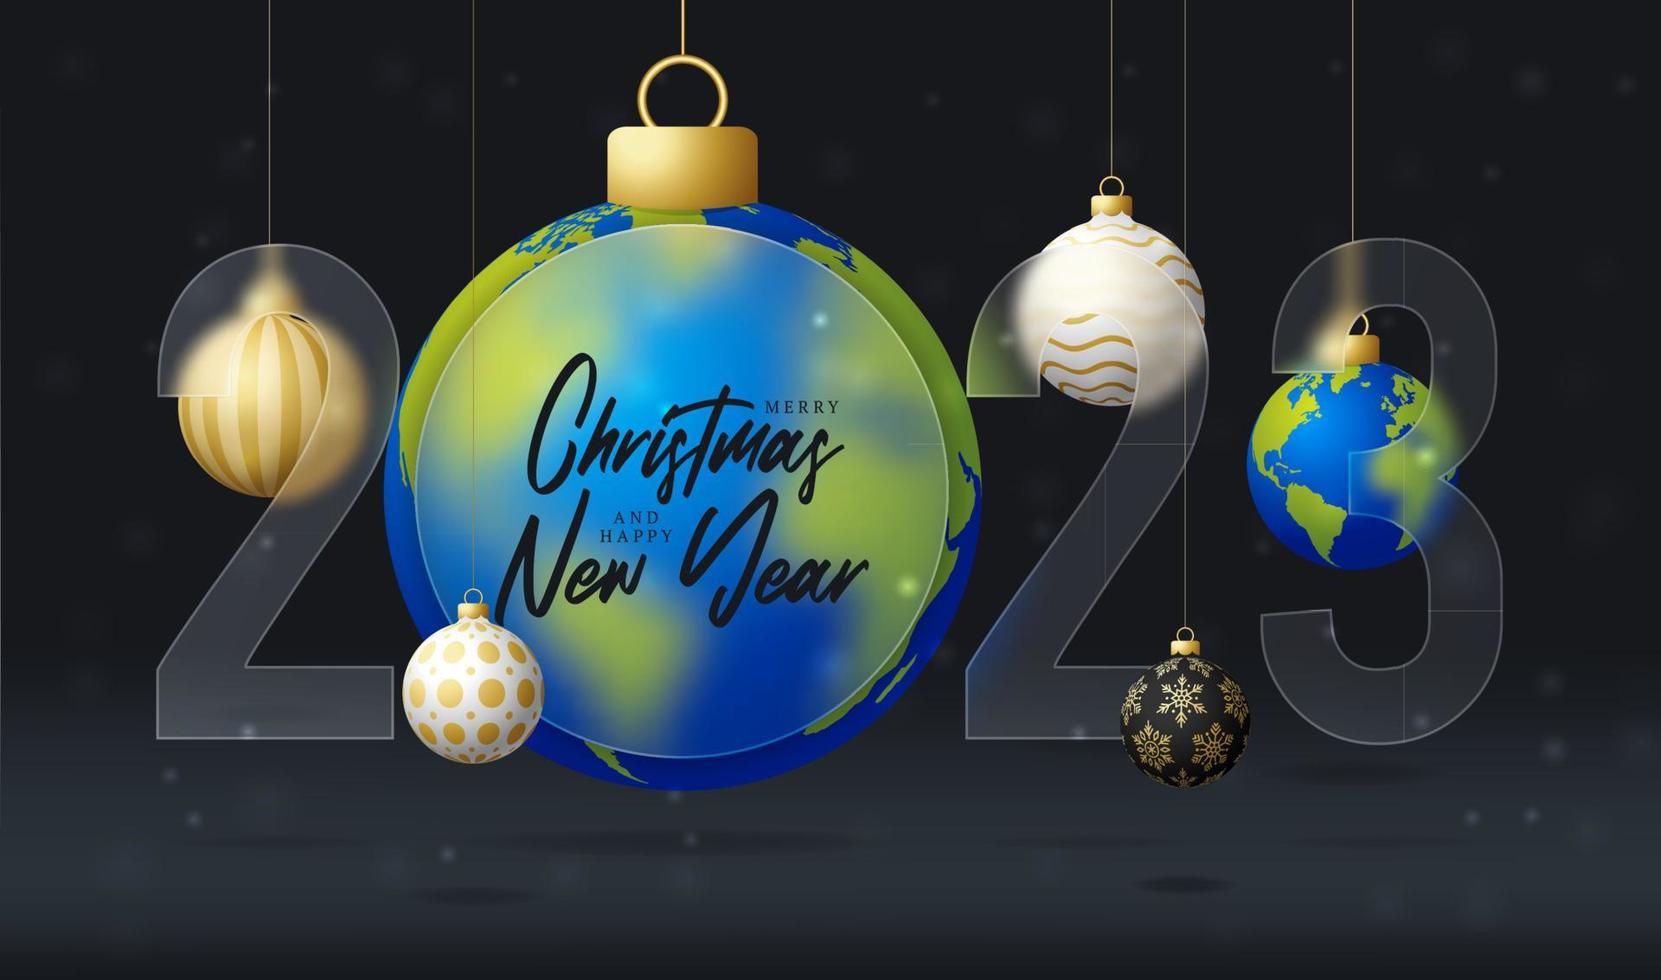 planeet aarde 2023 uitverkoop banier of groet kaart. vrolijk Kerstmis en gelukkig nieuw jaar 2023 sport banier met glasmorfisme of glas-morfisme vervagen effect. realistisch vector illustratie